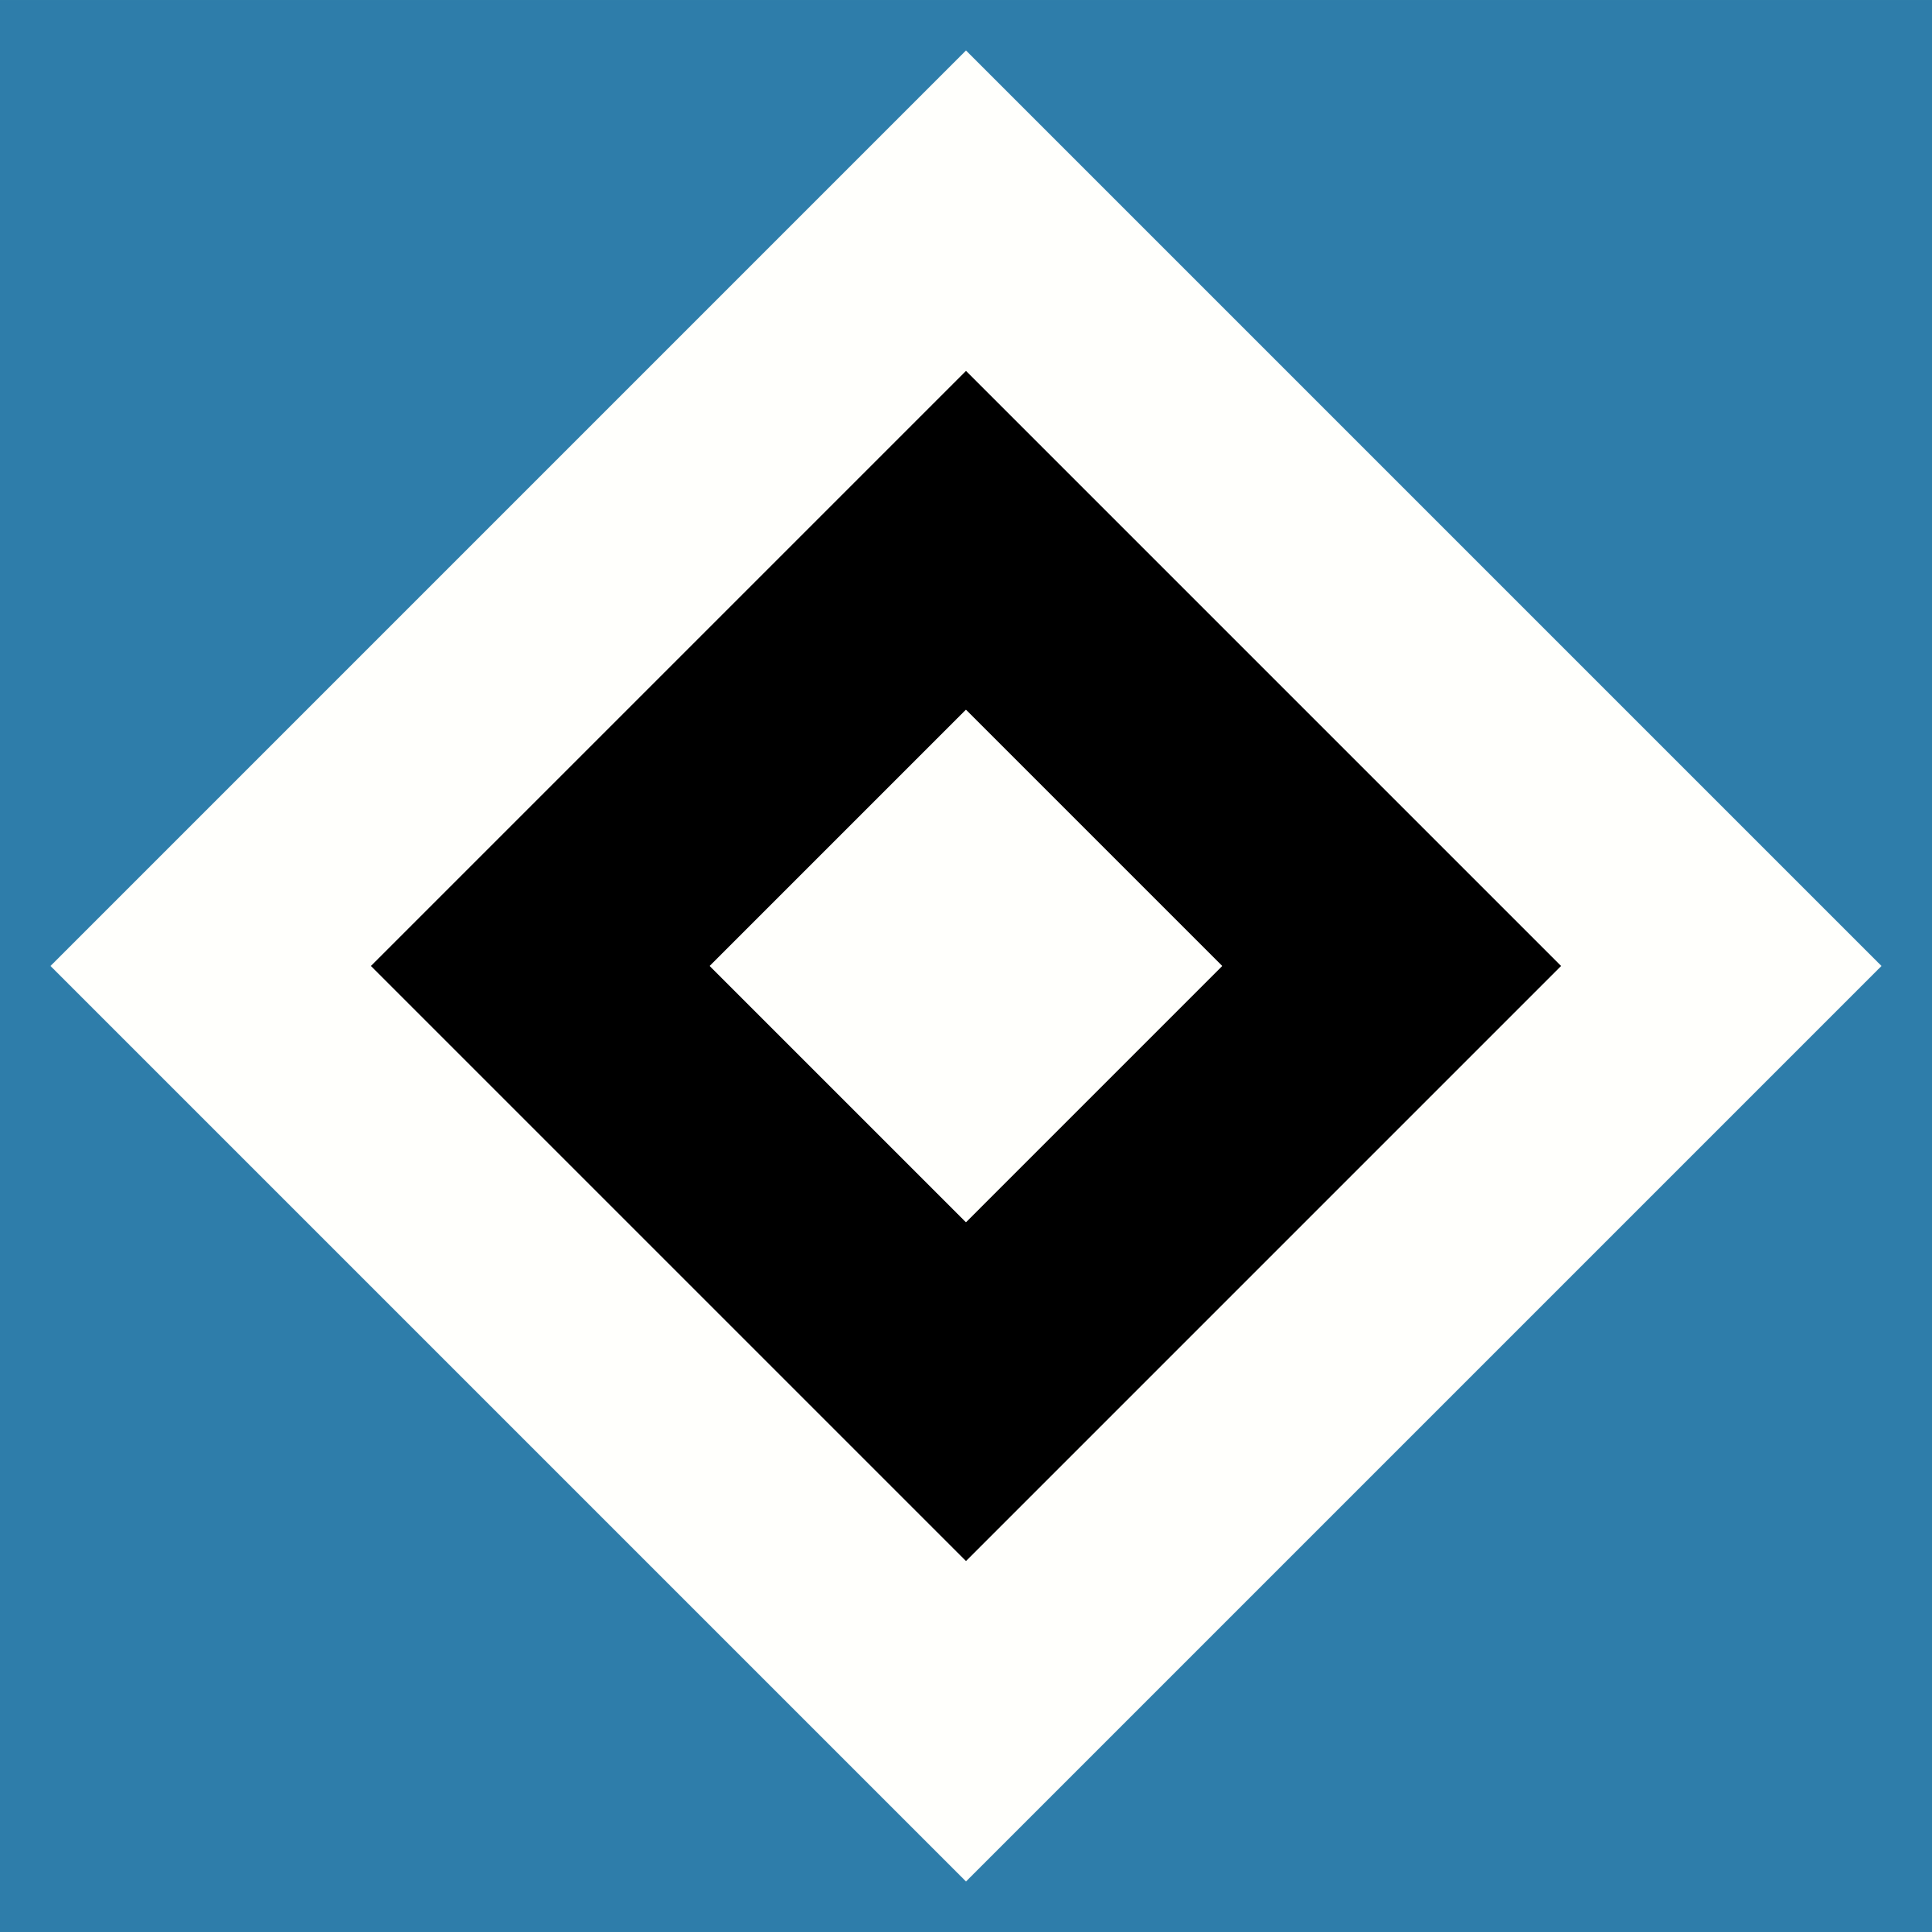 HSV Logo PNG Transparent & SVG Vector.